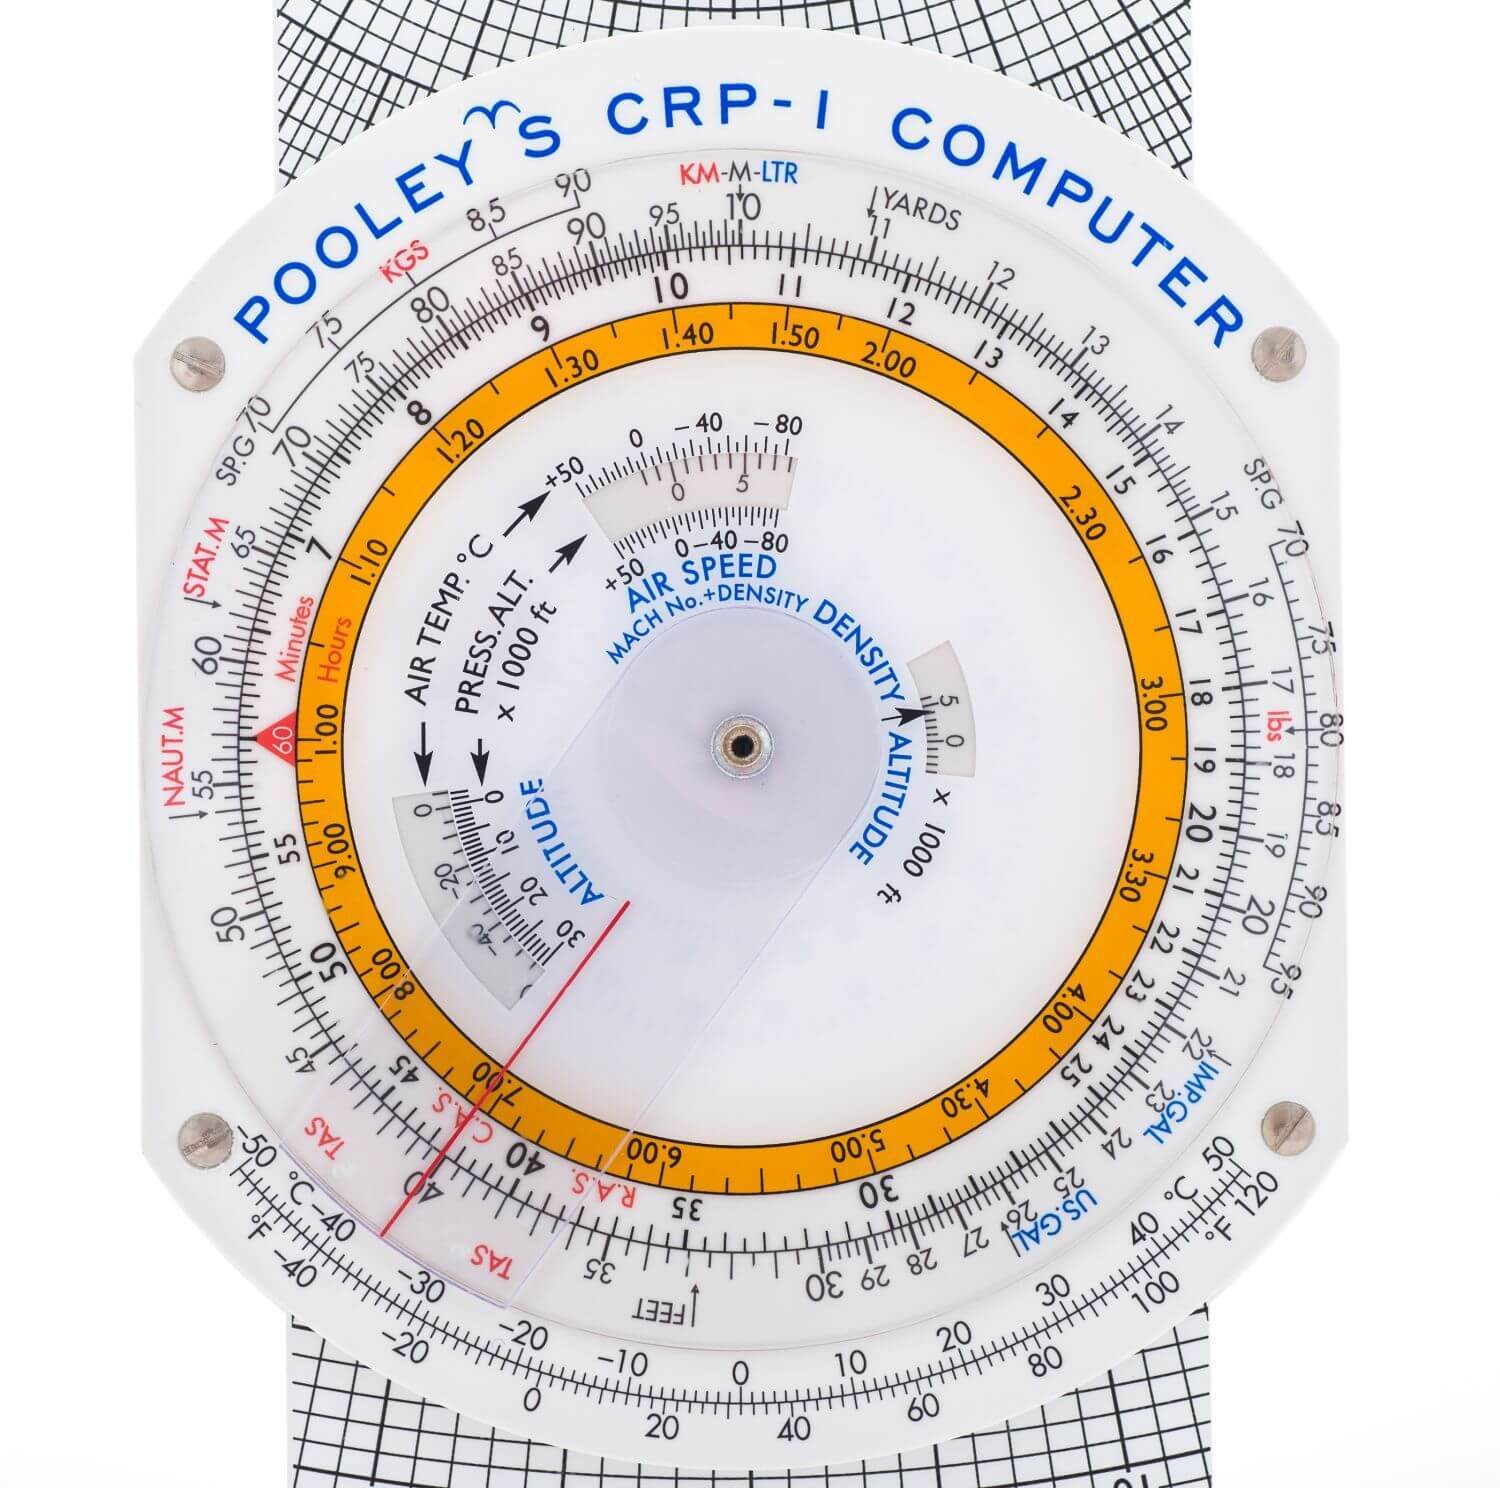 Pooleys Navigationsrechner CRP - 1W